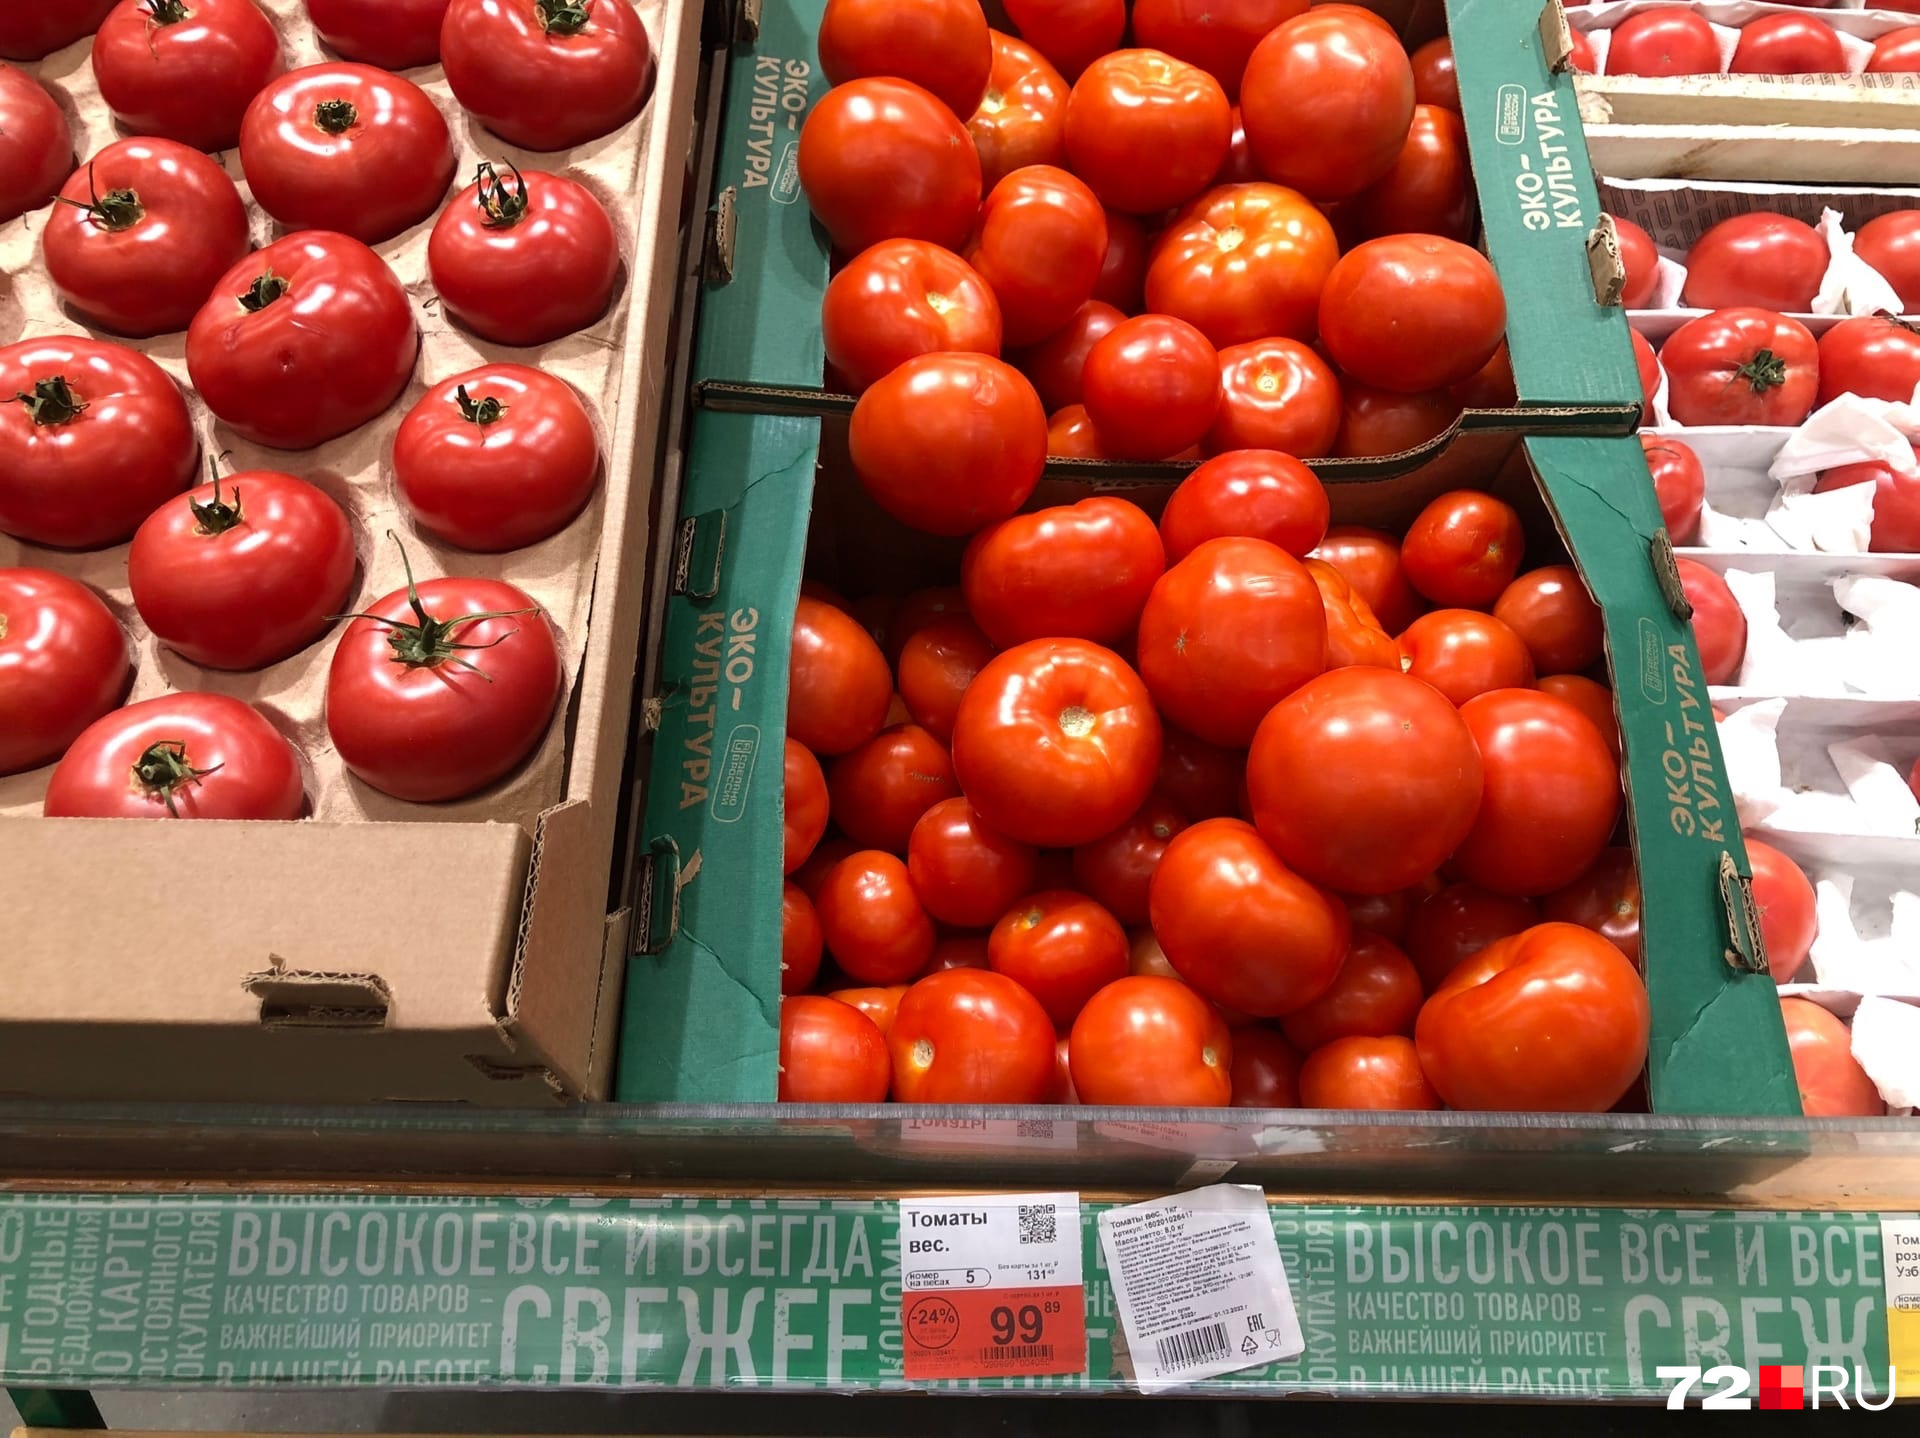 Сколько стоит помидоры в магазинах. Помидоры на прилавке. Помидоры в магазине. Сколько стоят помидоры. Помидоры в магазине Монетка.